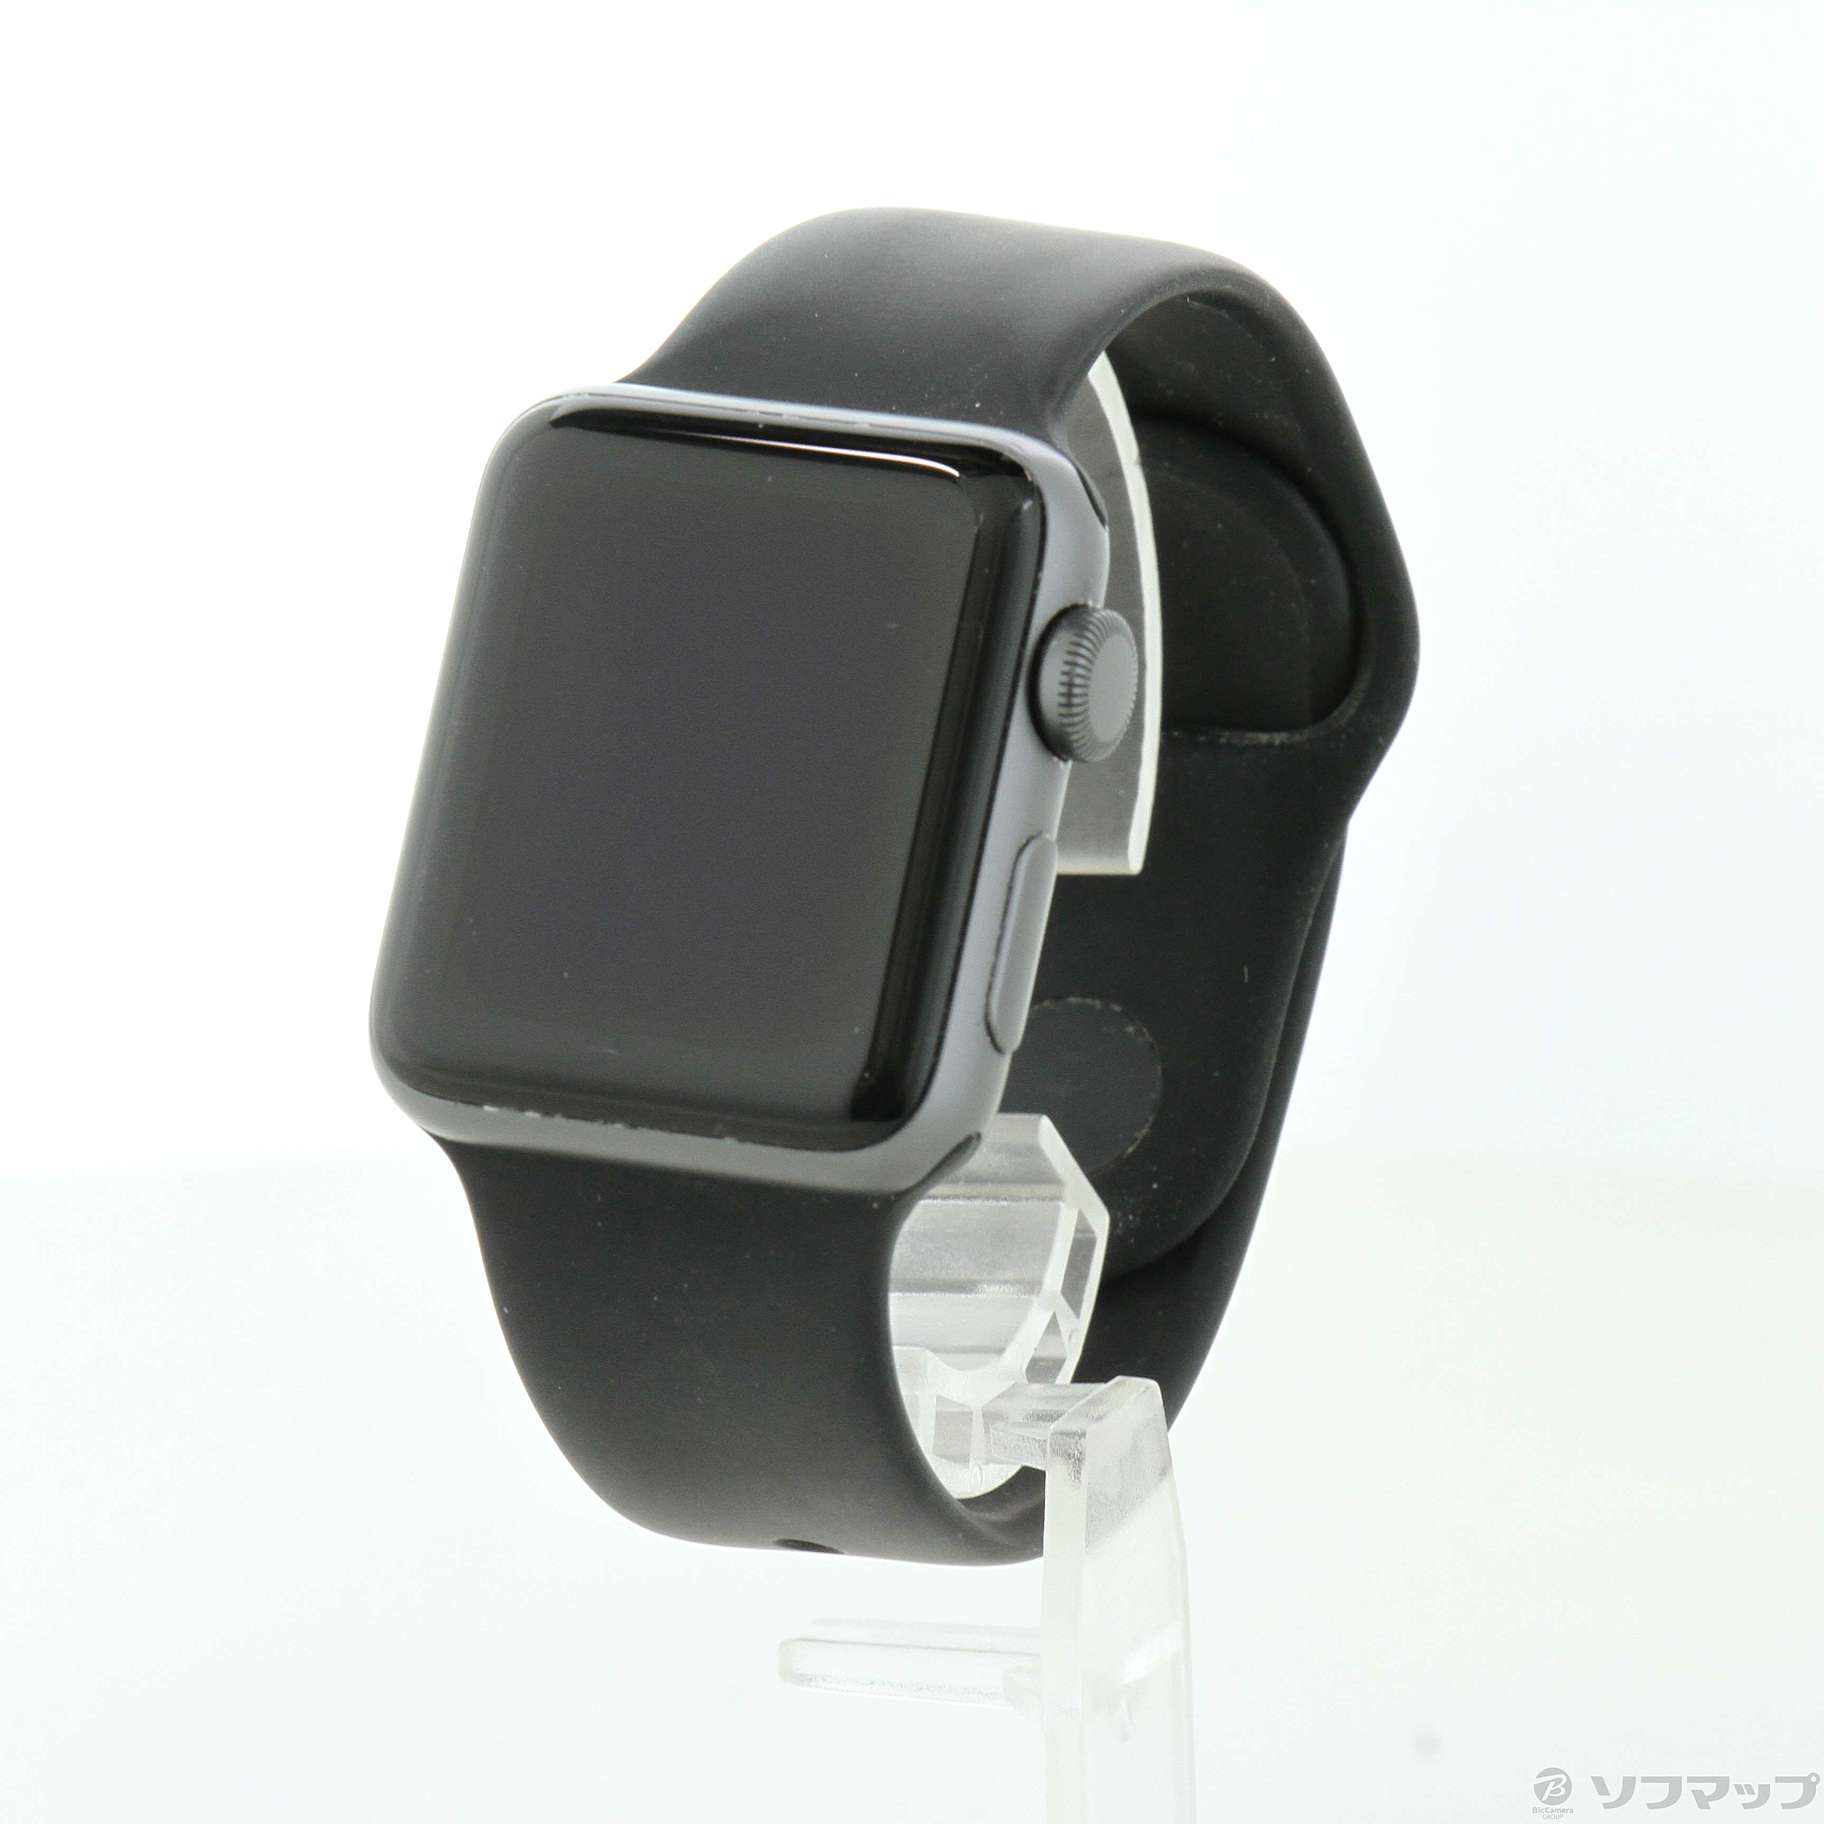 中古品〕 Apple Watch Series 2 38mm スペースグレイアルミニウム